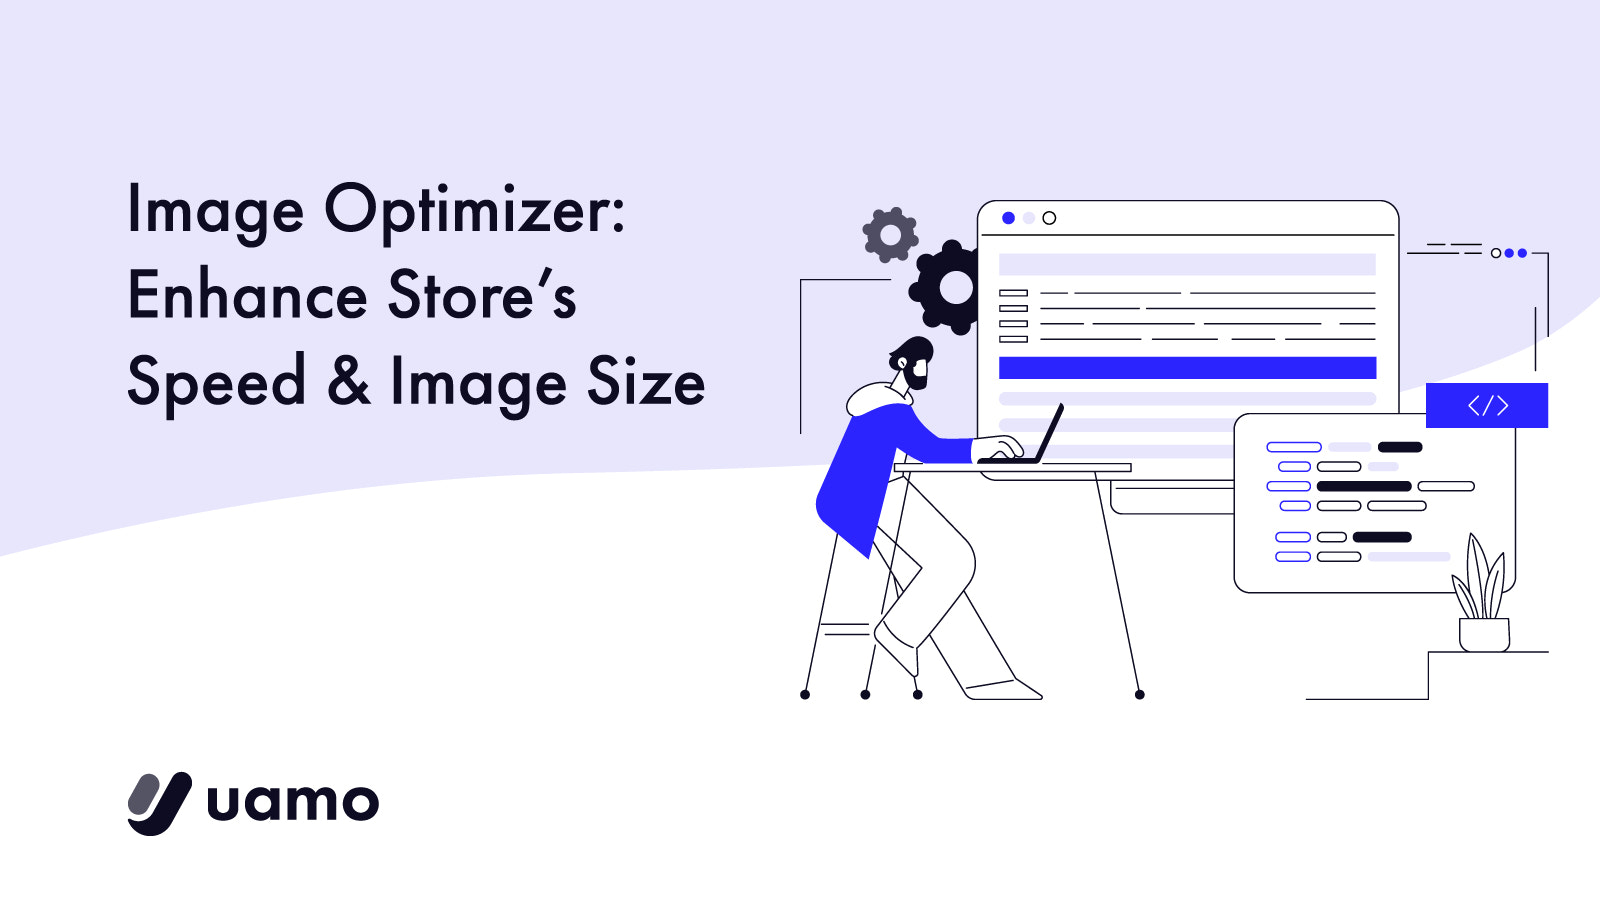 Image Optimizer: Enhance Store's Speed & Image Size